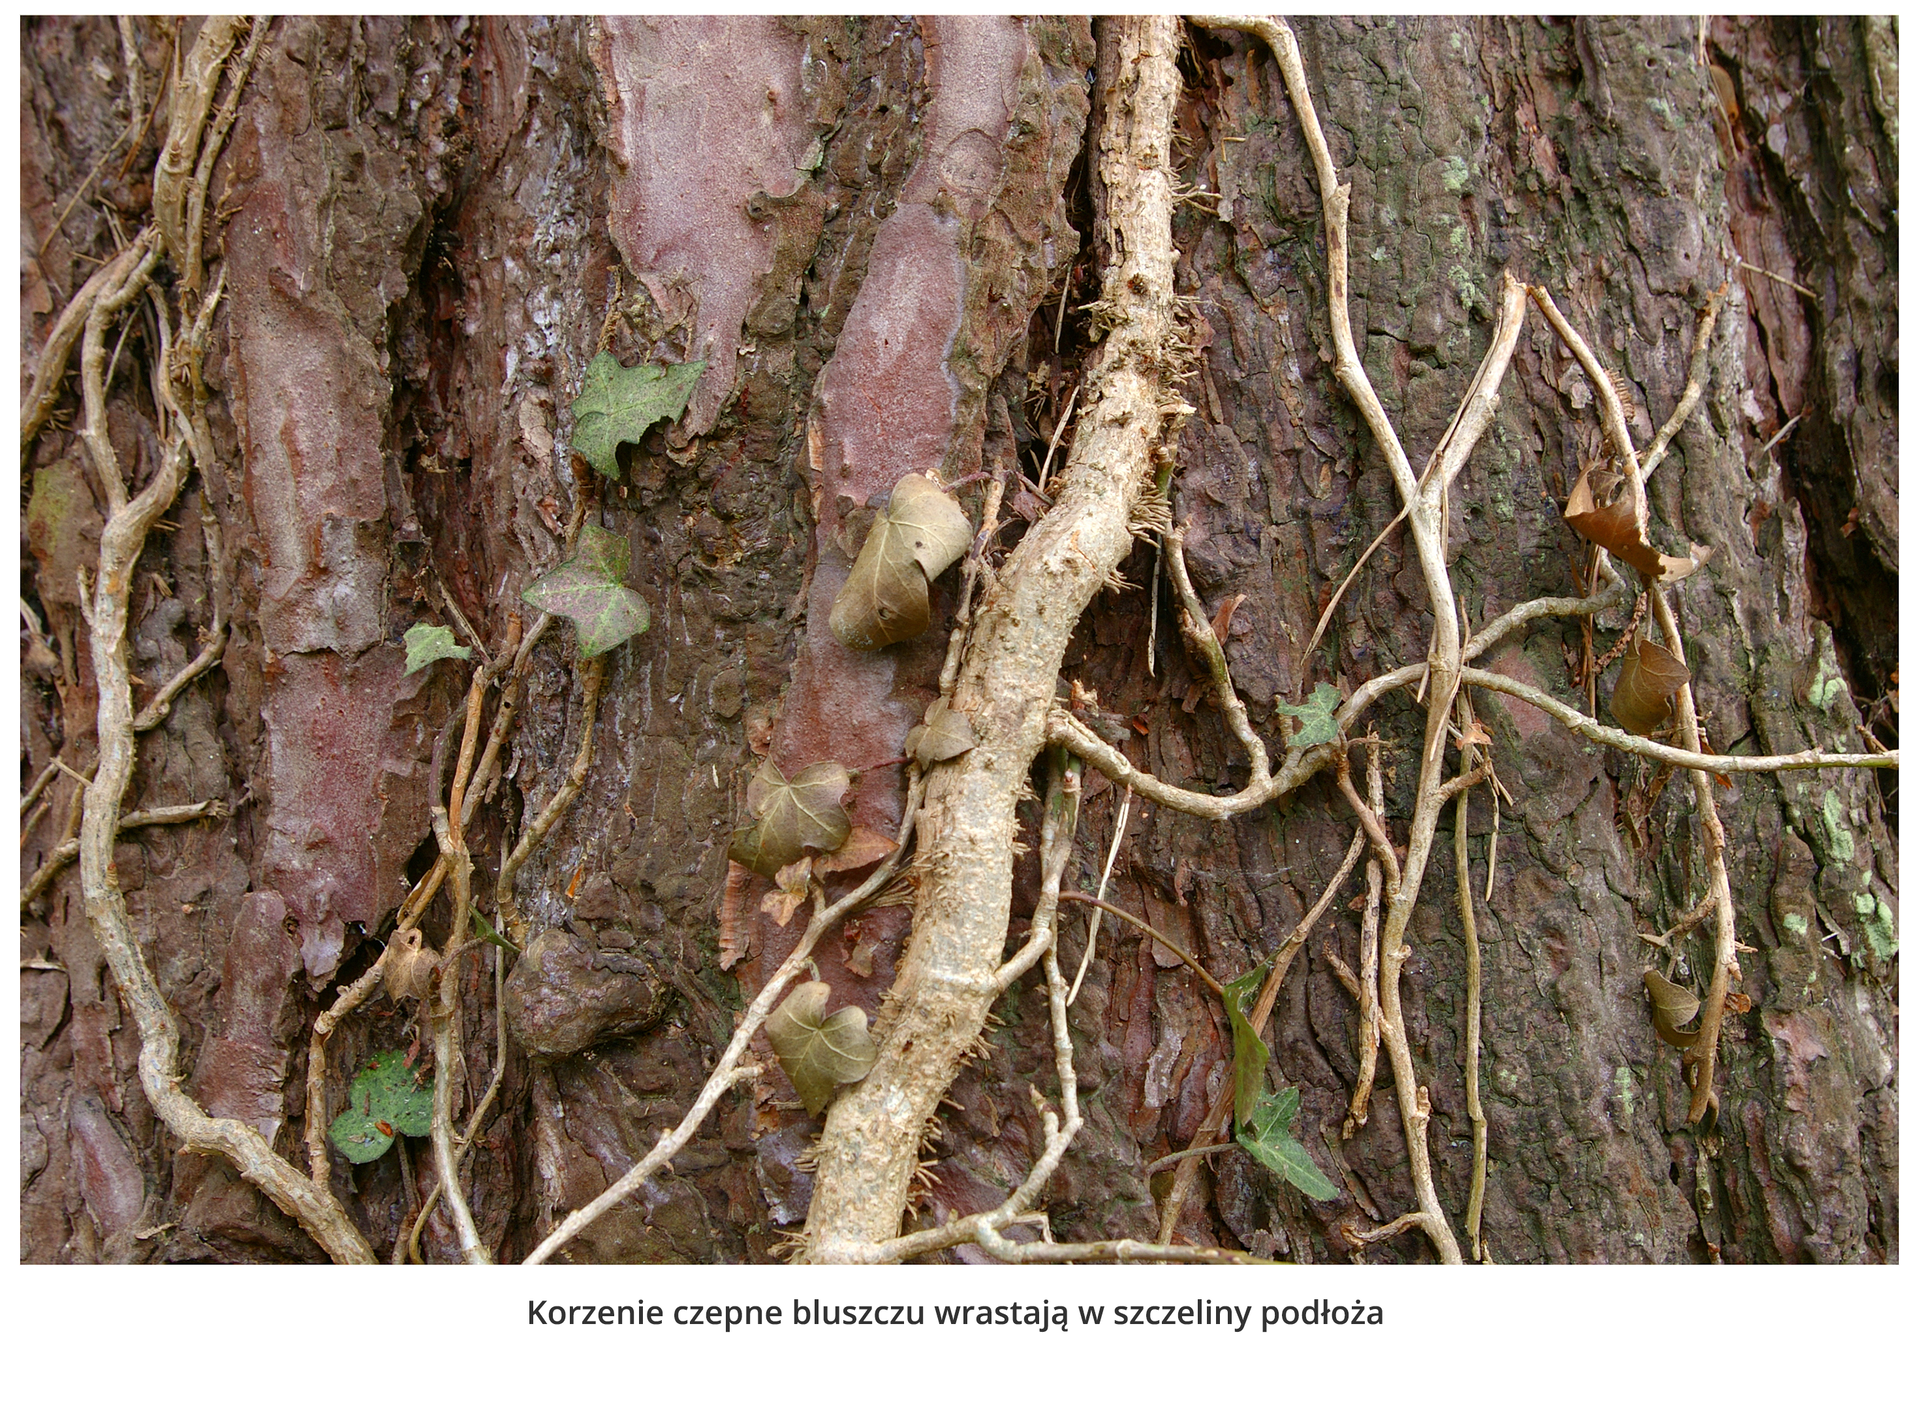 Fotografia przedstawia zbliżenie pędu bluszczu na pniu drzewa. Żeby móc się wspinać, korzenie czepne bluszczu wrastają w szczeliny podłoża.